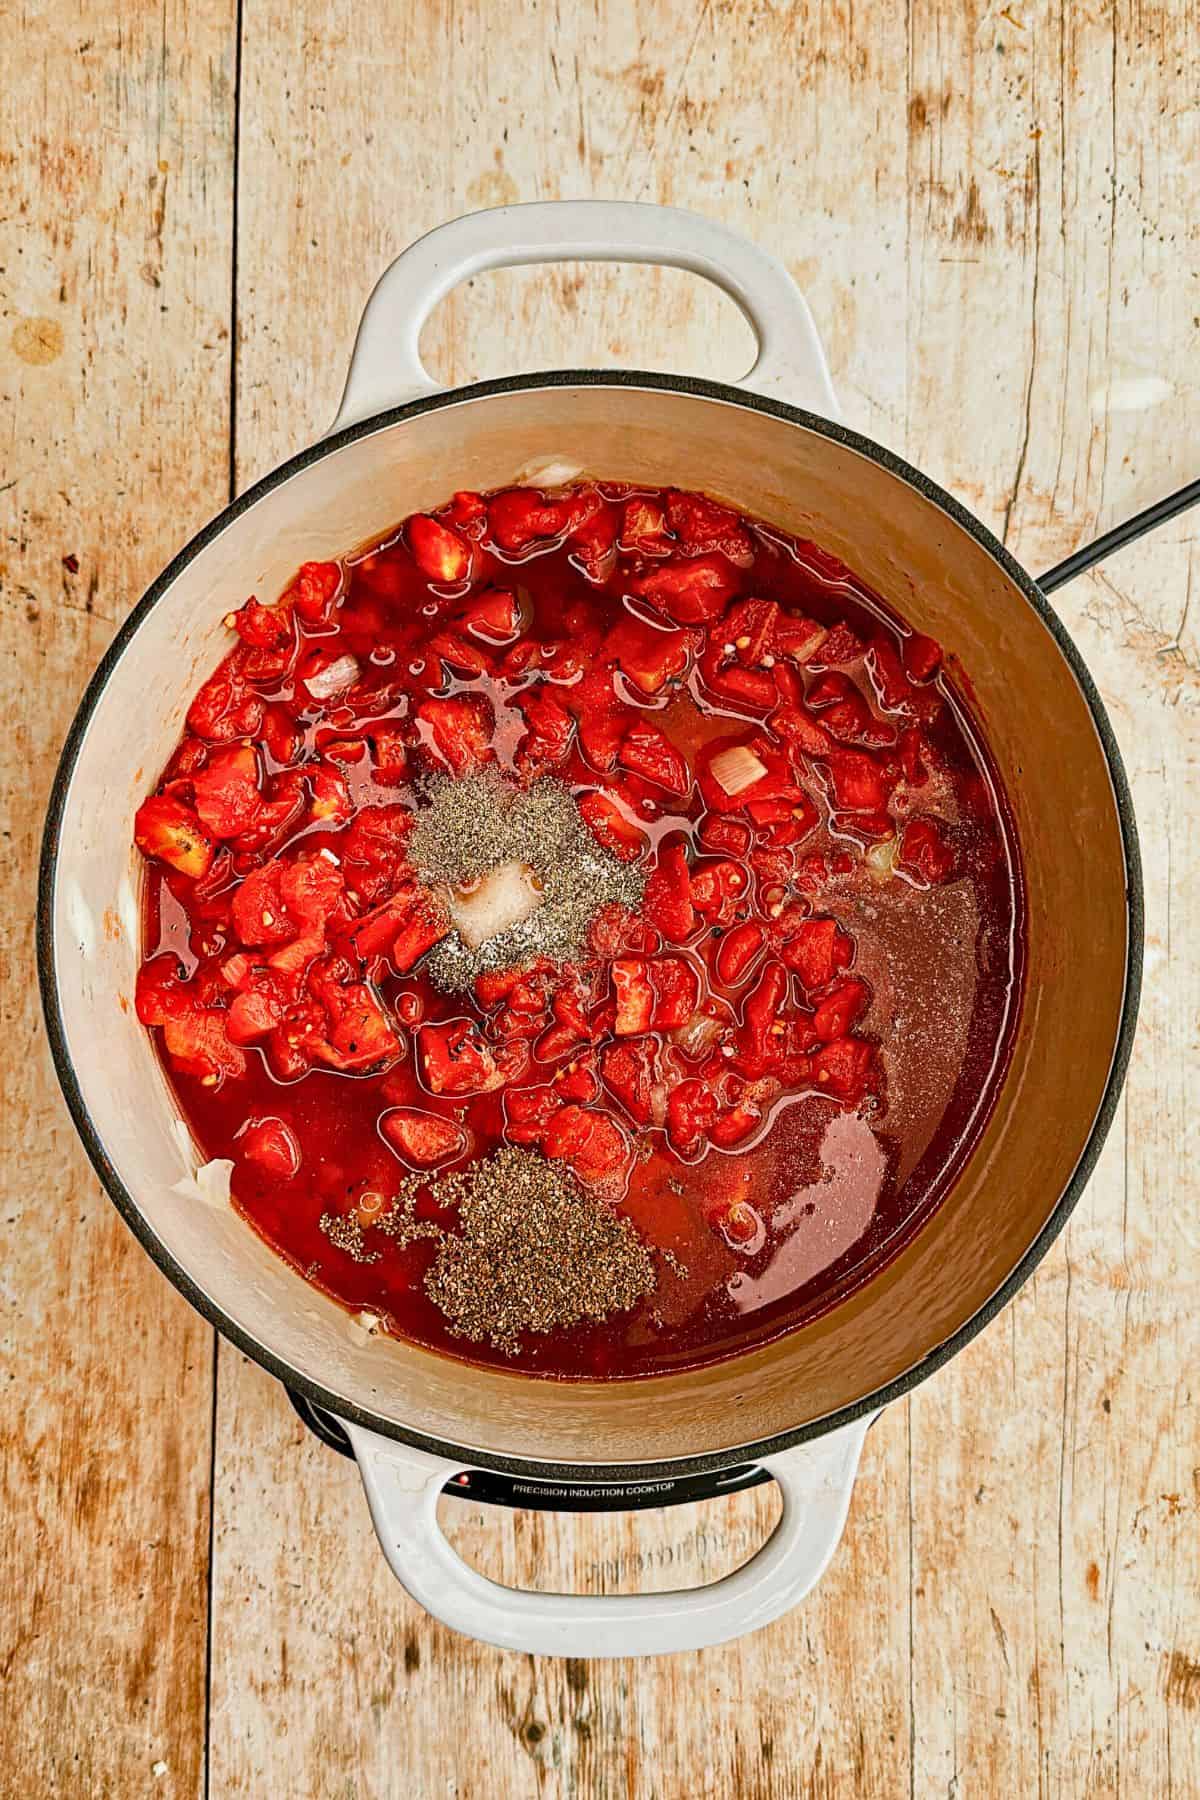 adding seasonings to vegan tomato soup